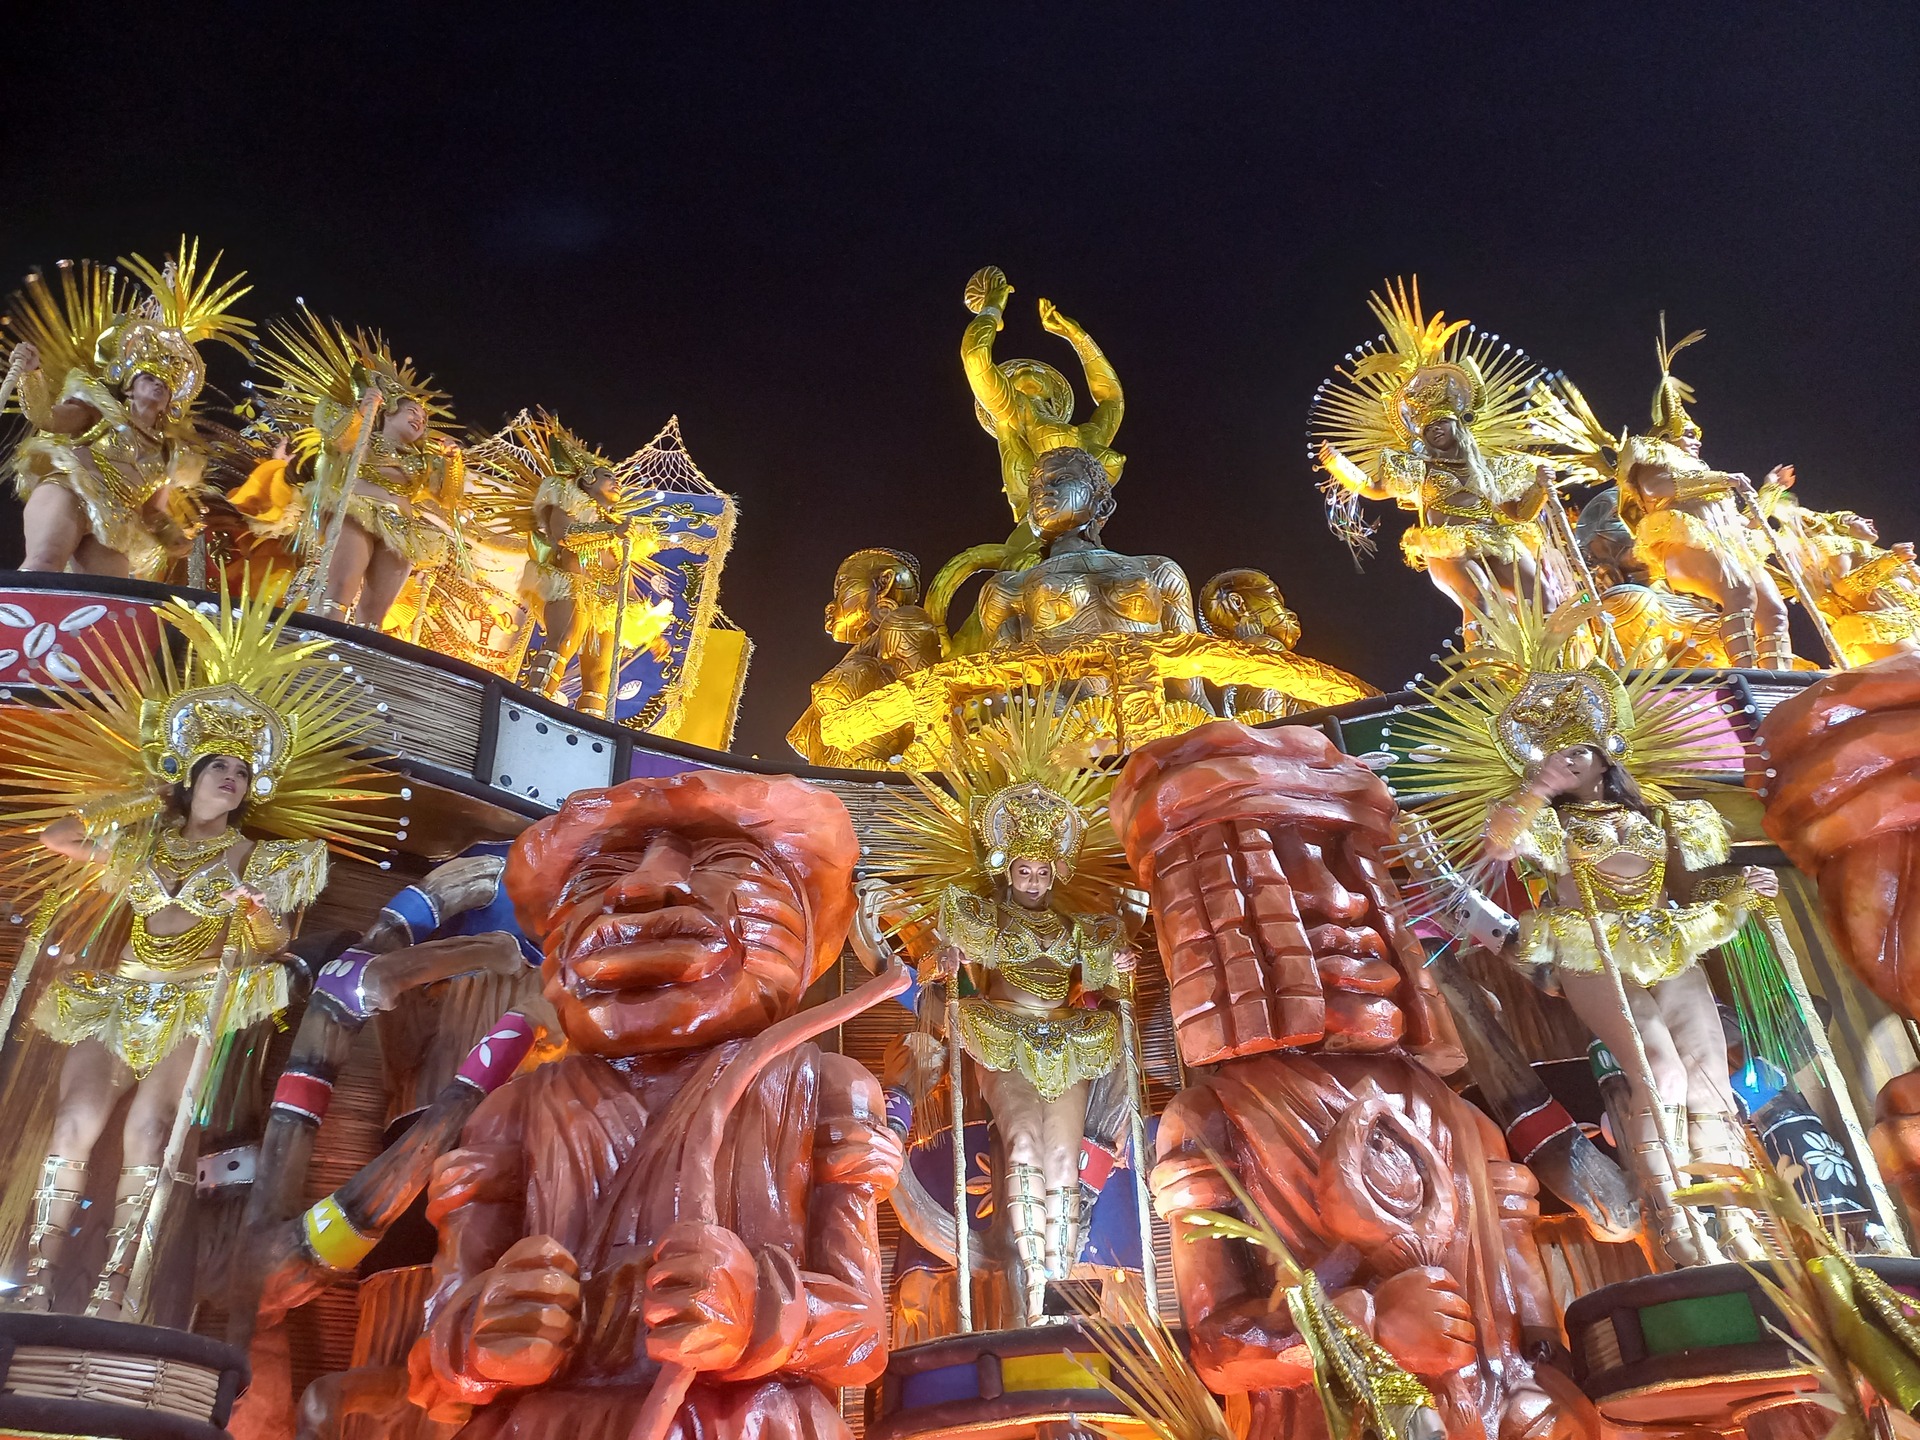 Resultado do Carnaval do Rio confirma força das religiões de